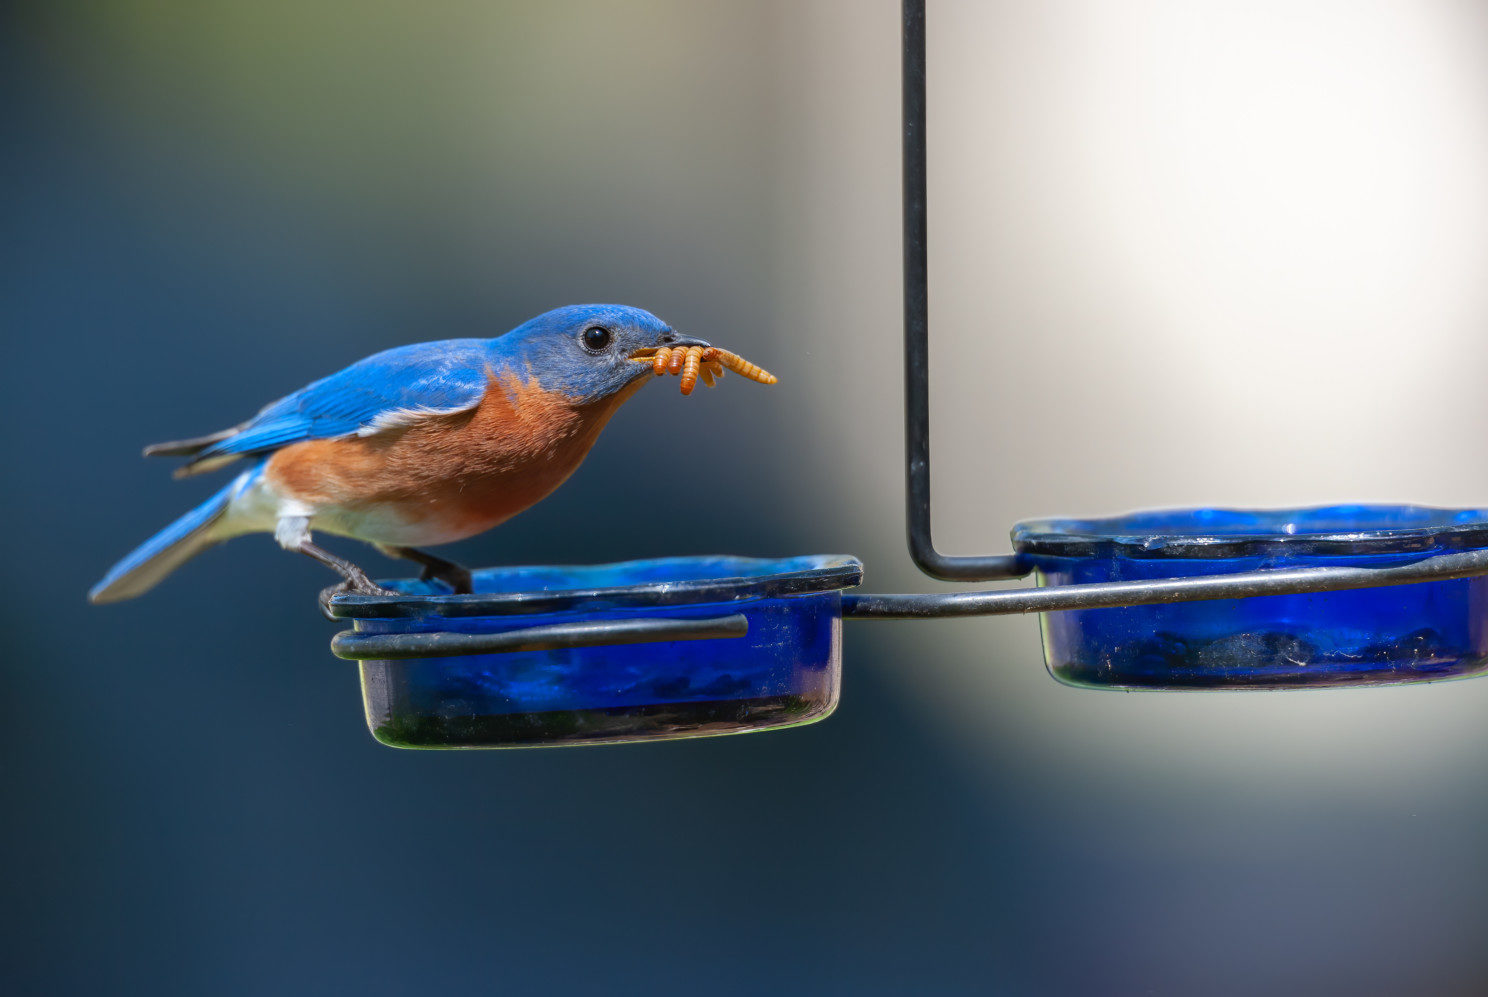 Eastern bluebird at feeder in yard